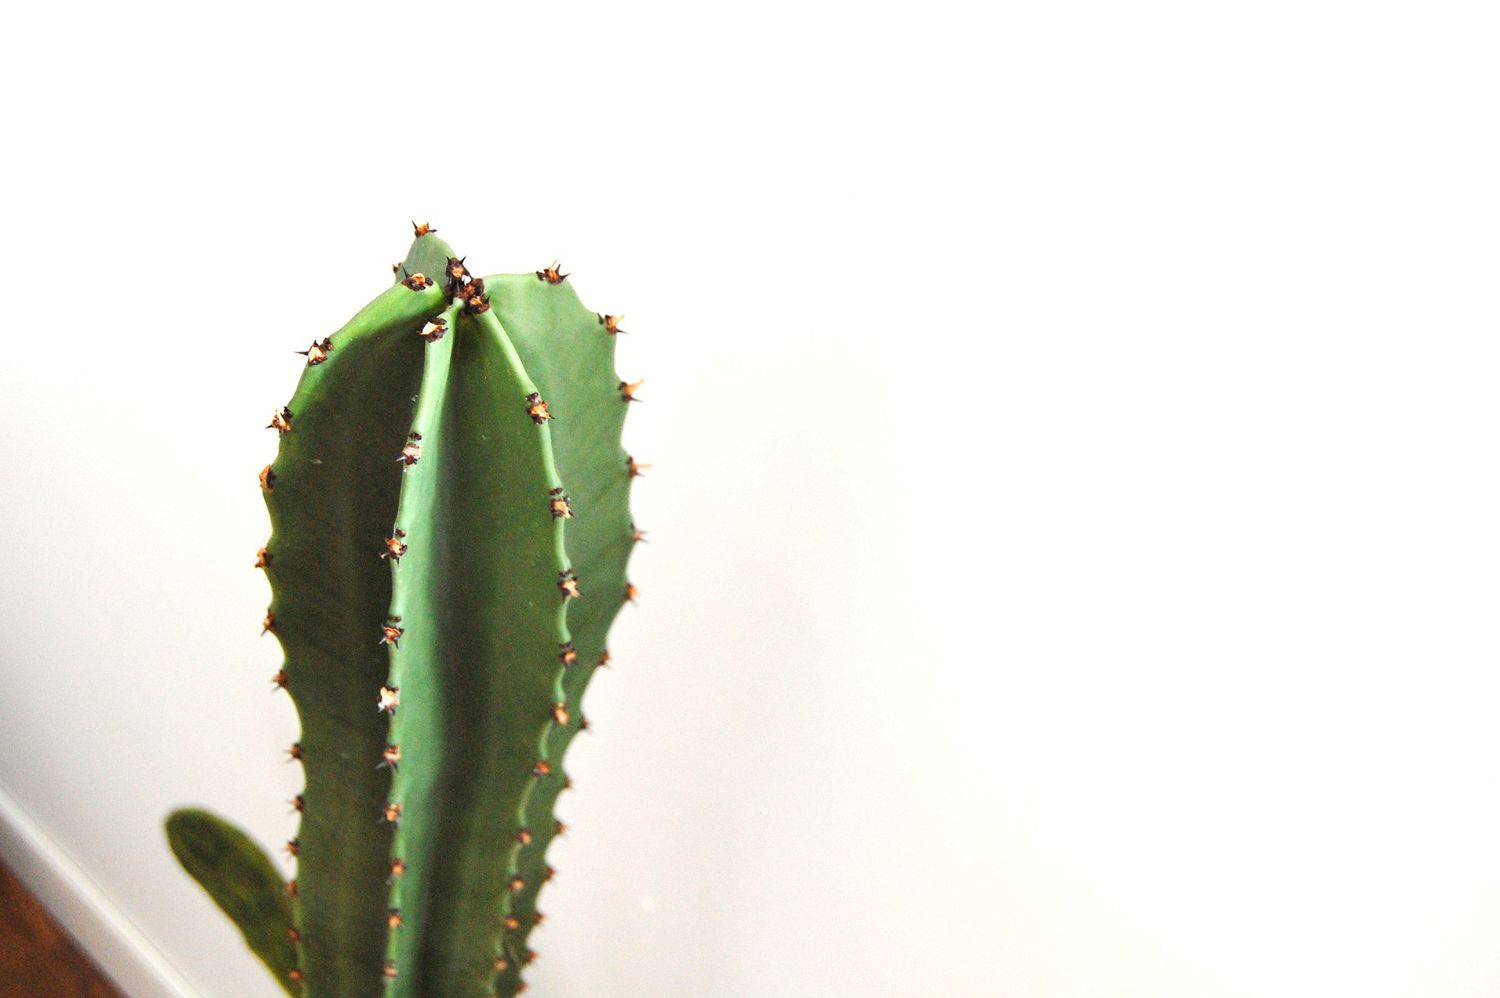 Nahaufnahme der Spitze einer hohen Euphorbia ingens-Sukkulente vor einer weißen Wand.